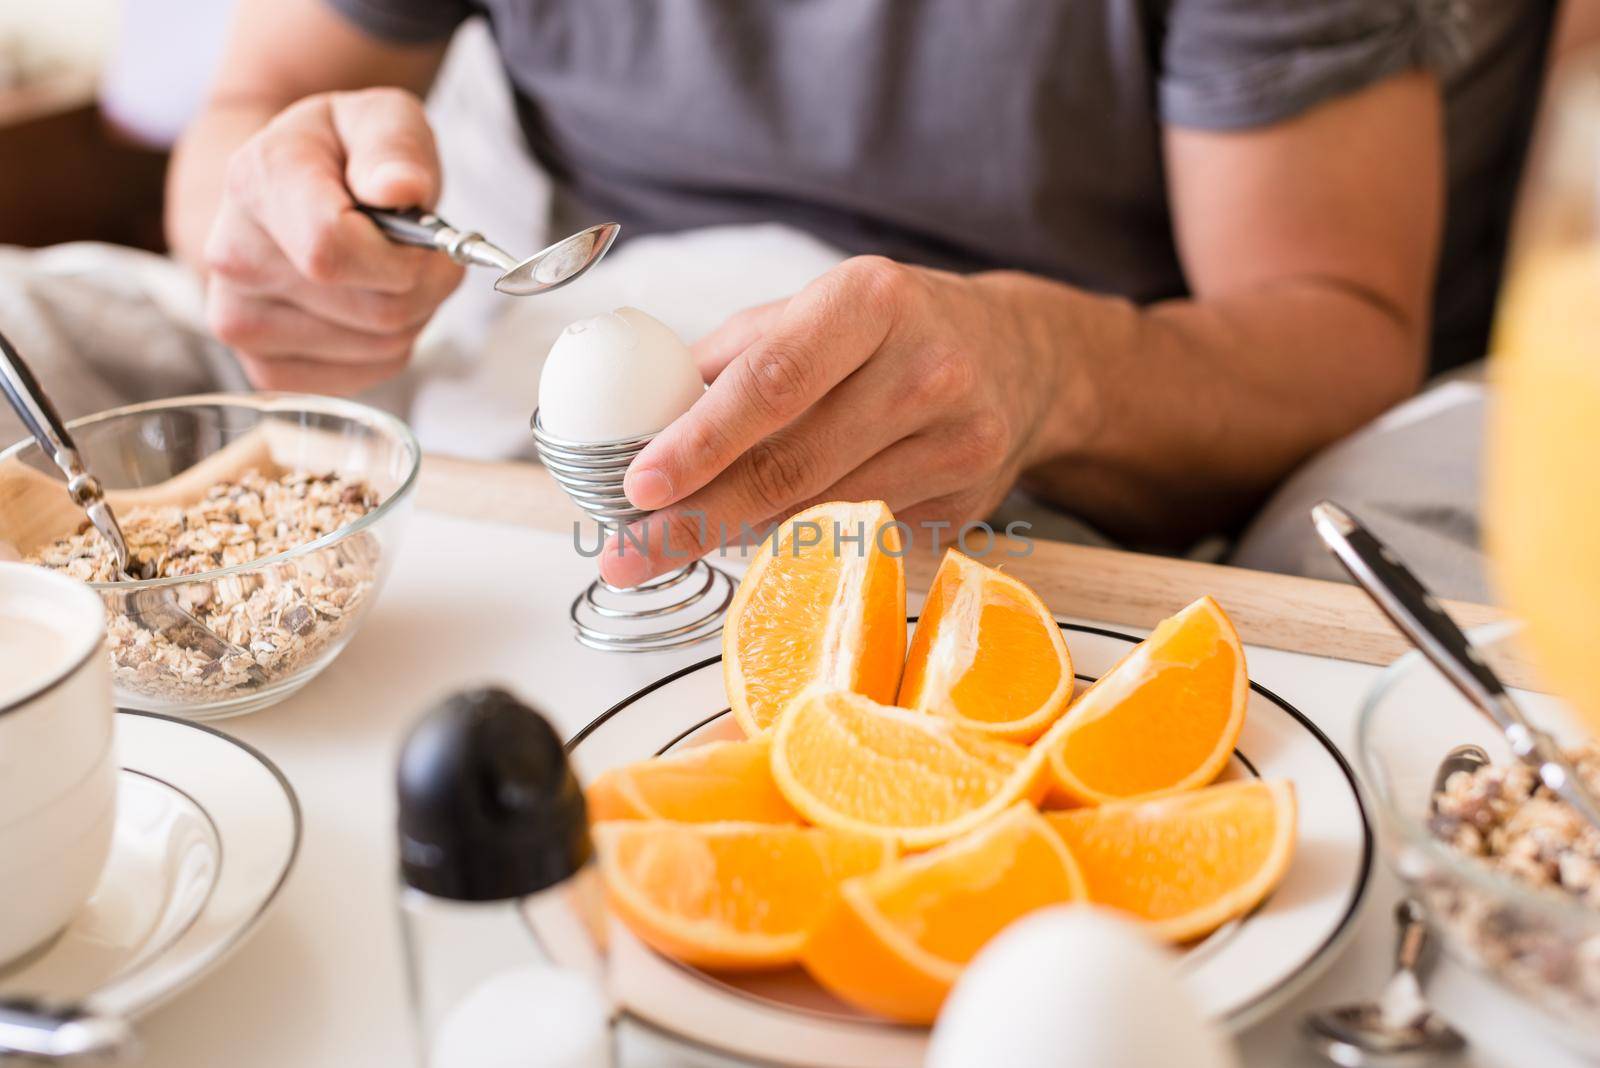 Man cracking open a boiled egg for breakfast by Kzenon